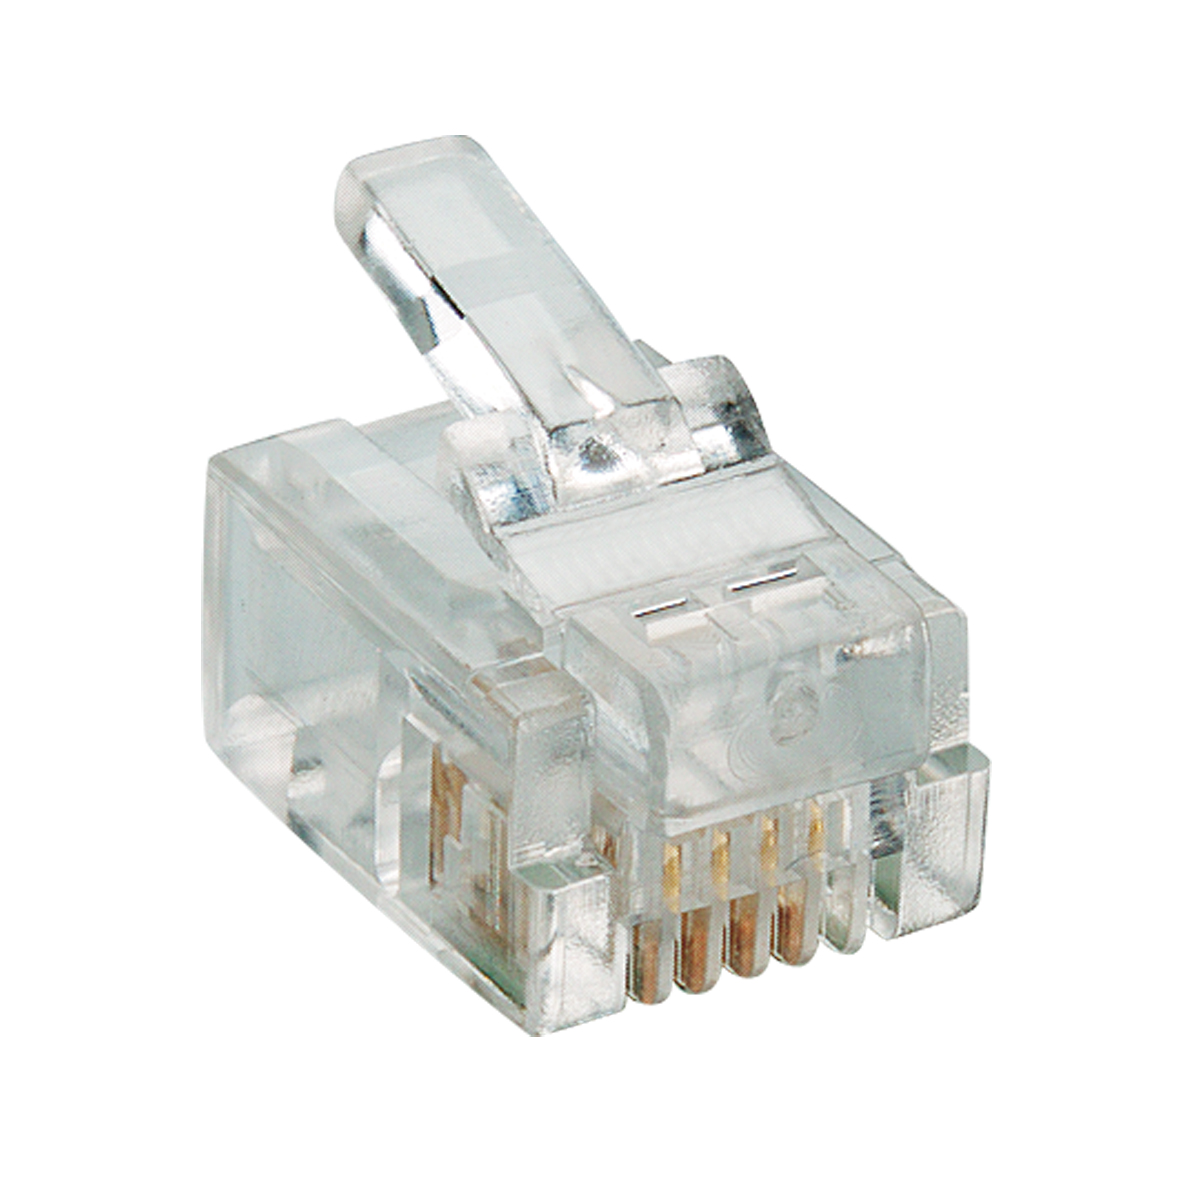 Lumberg: P 127 (Series 25 | Modular connectors)